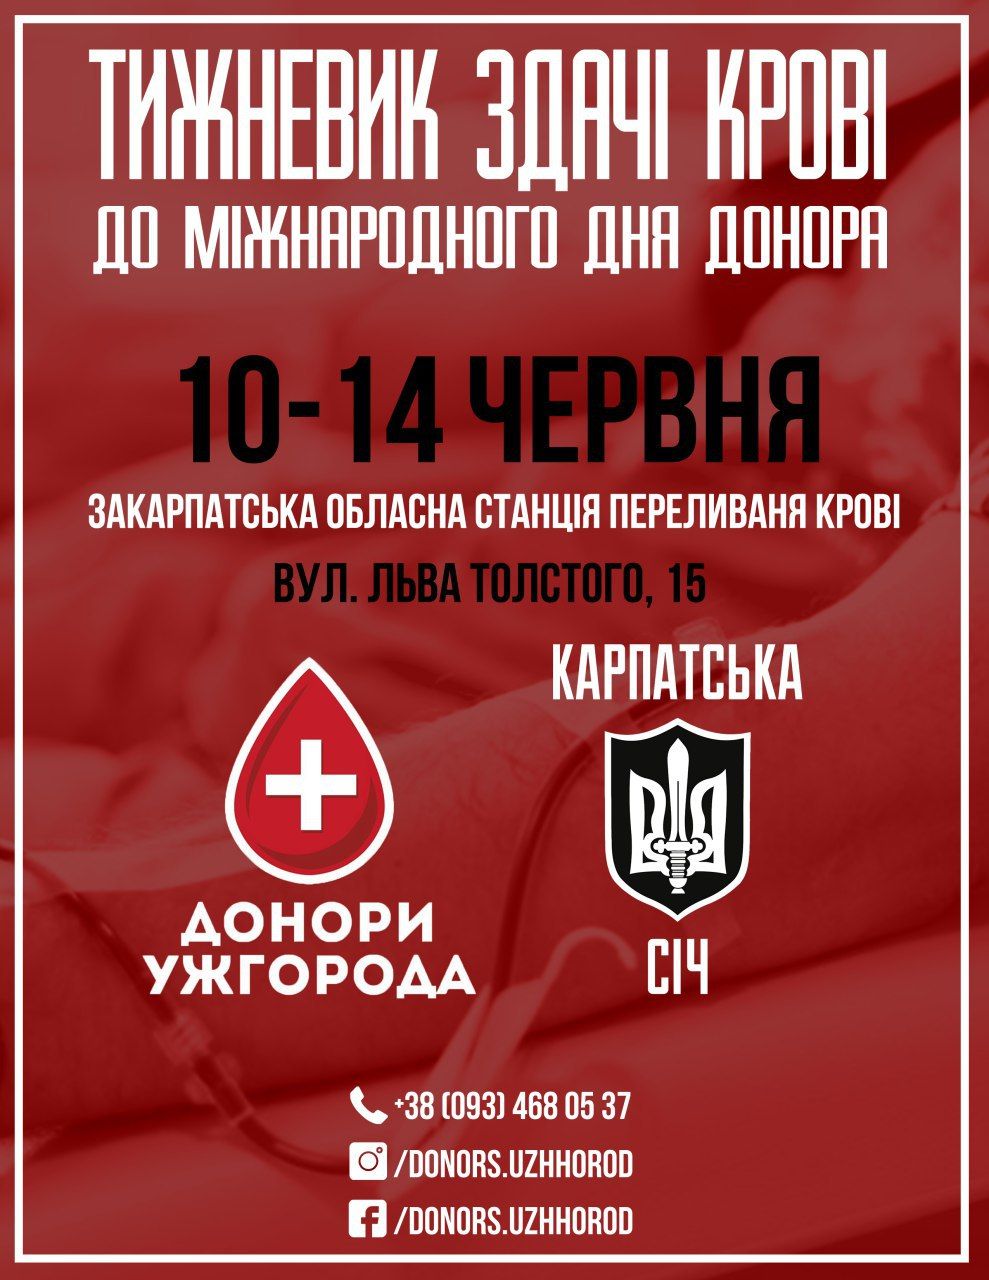 Тижневик здачі крові відбудеться в Ужгороді до Міжнародного дня донора.